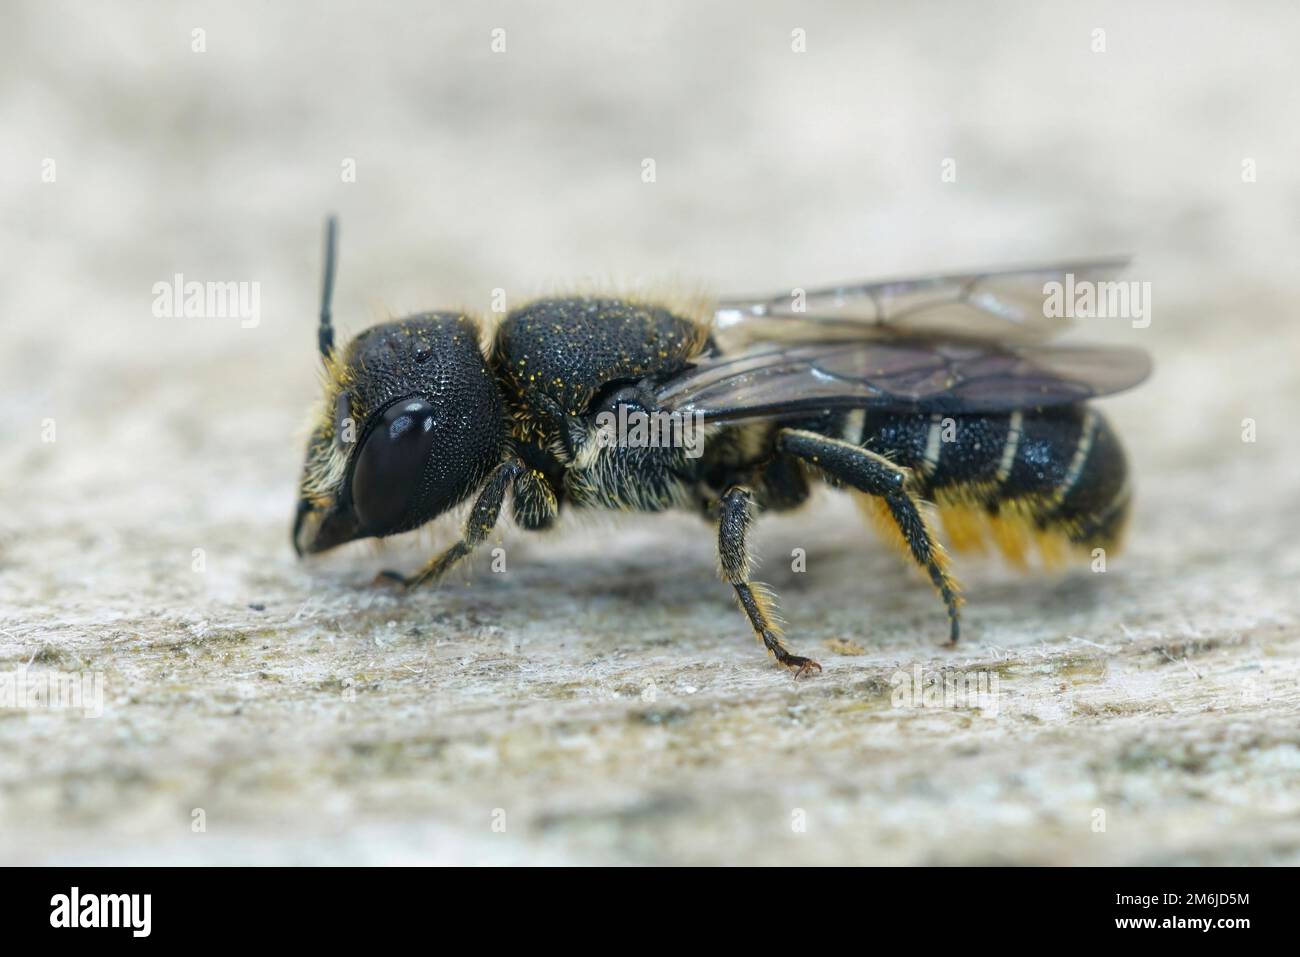 Nahaufnahme einer süßen weiblichen, großköpfigen, gepanzerten Harzbiene, Heriades Truncorum, auf Holz sitzend Stockfoto